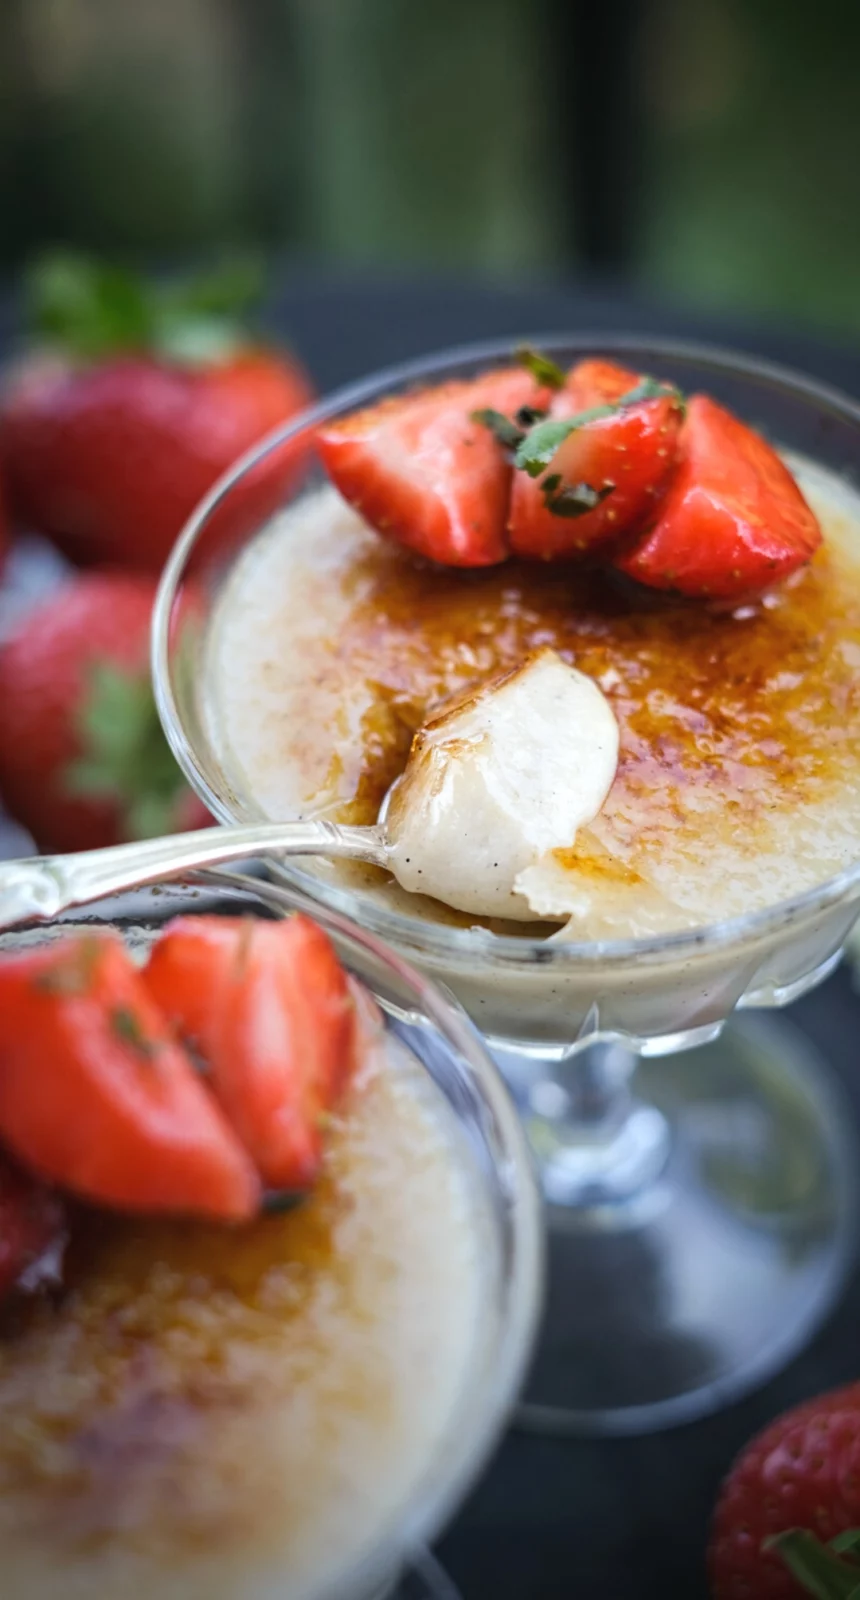 Vegansk creme brulee (vegansk crème brûlée) serverad i dessertglas med jordgubbar och sked.